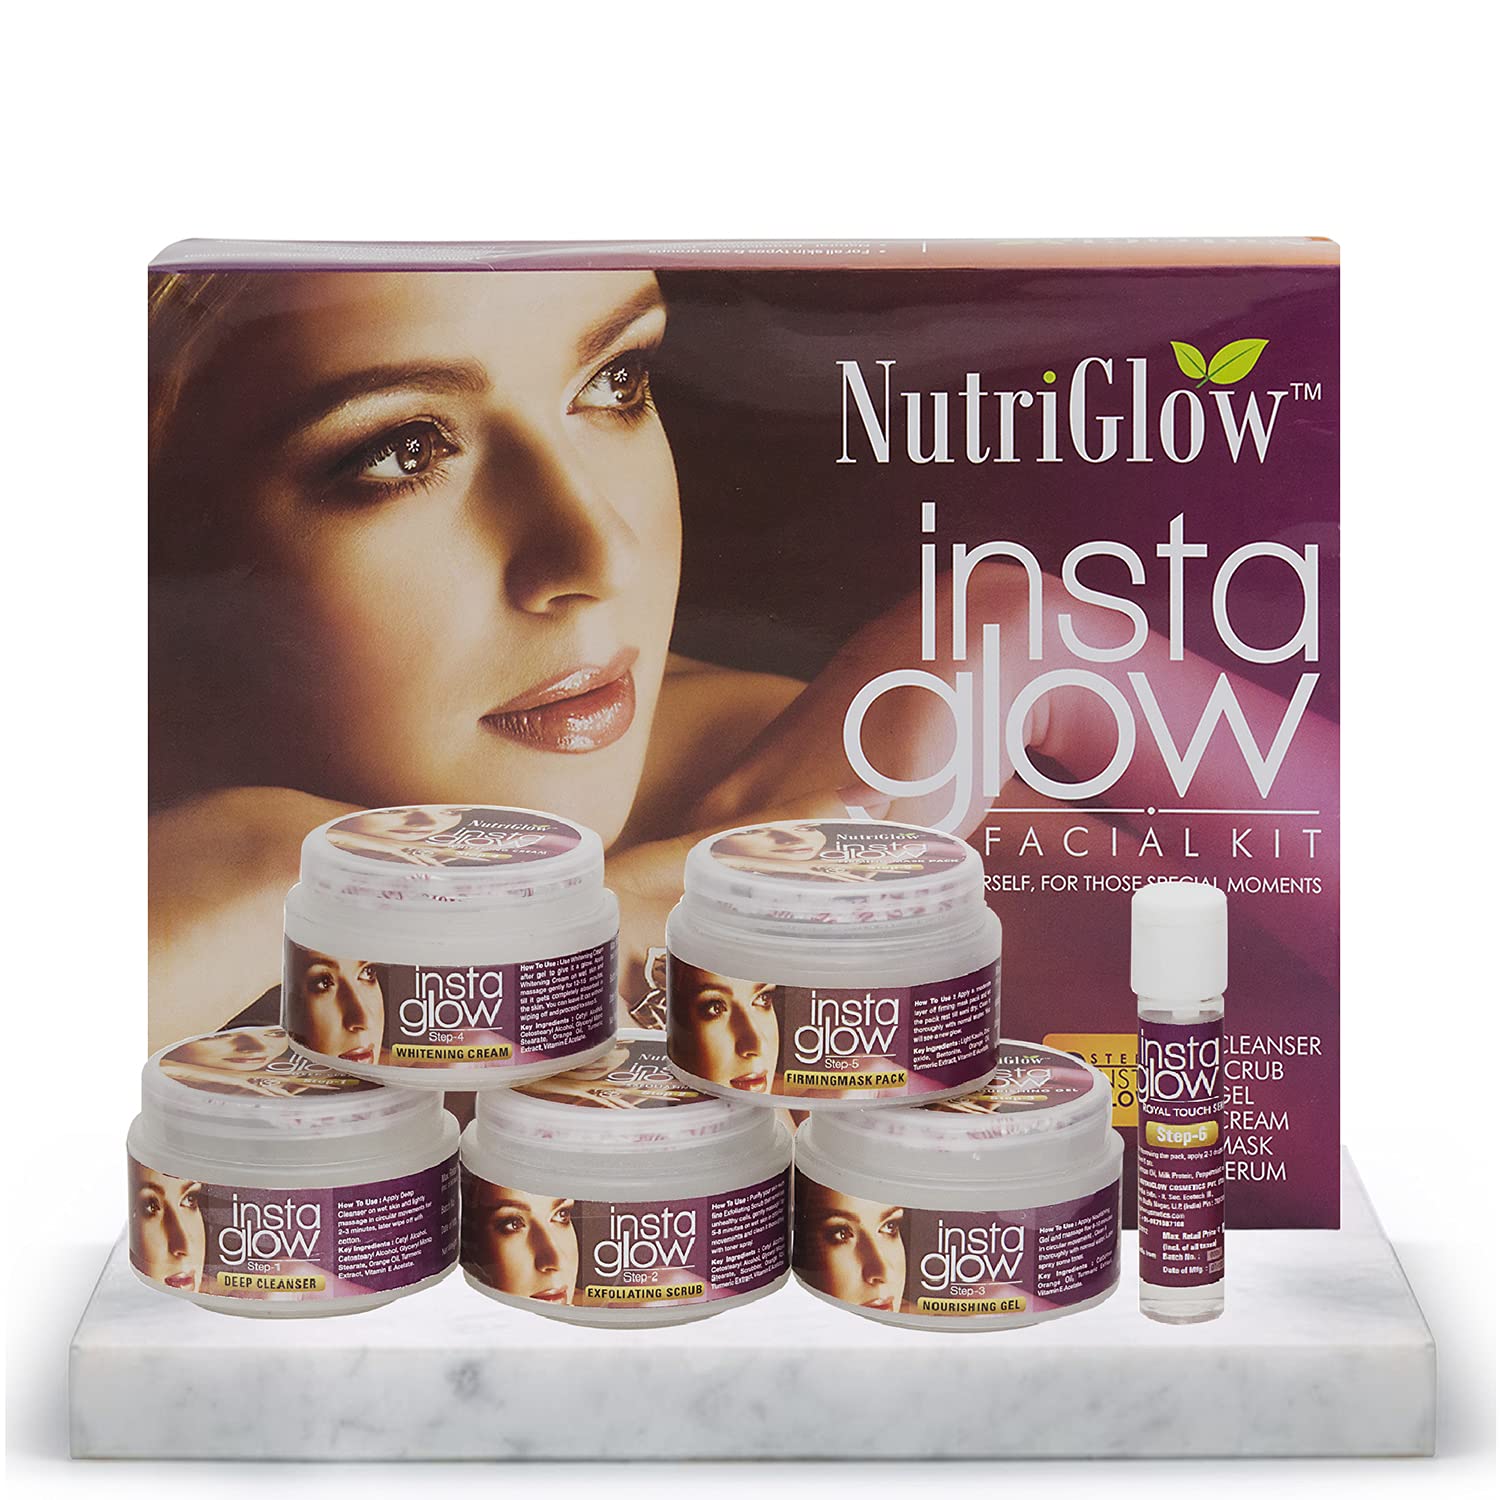 Buy NutriGlow Insta Glow Facial Kit